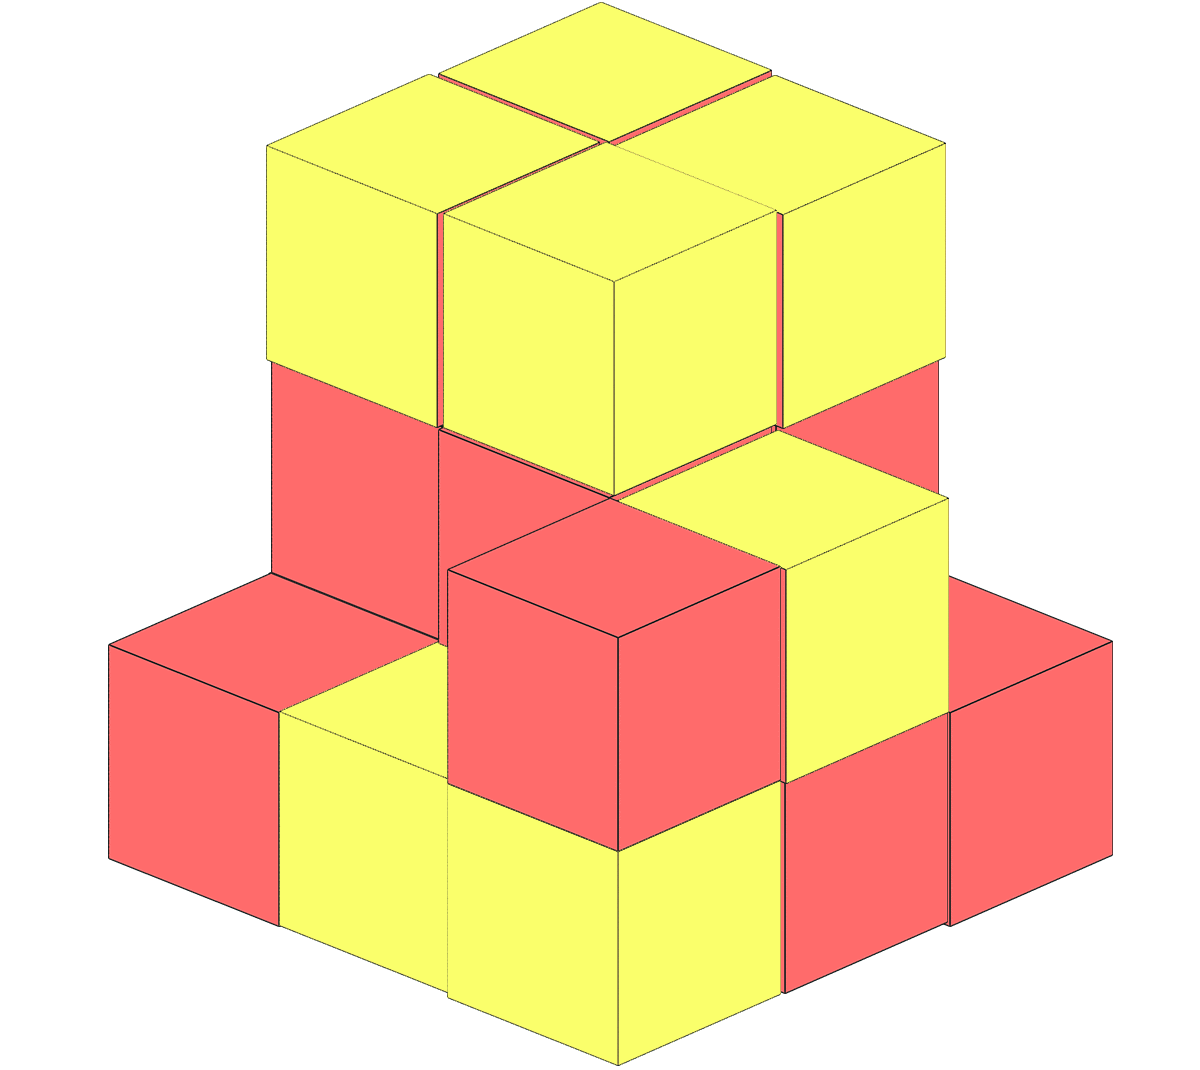 3つの面に色が塗られた立方体は8個